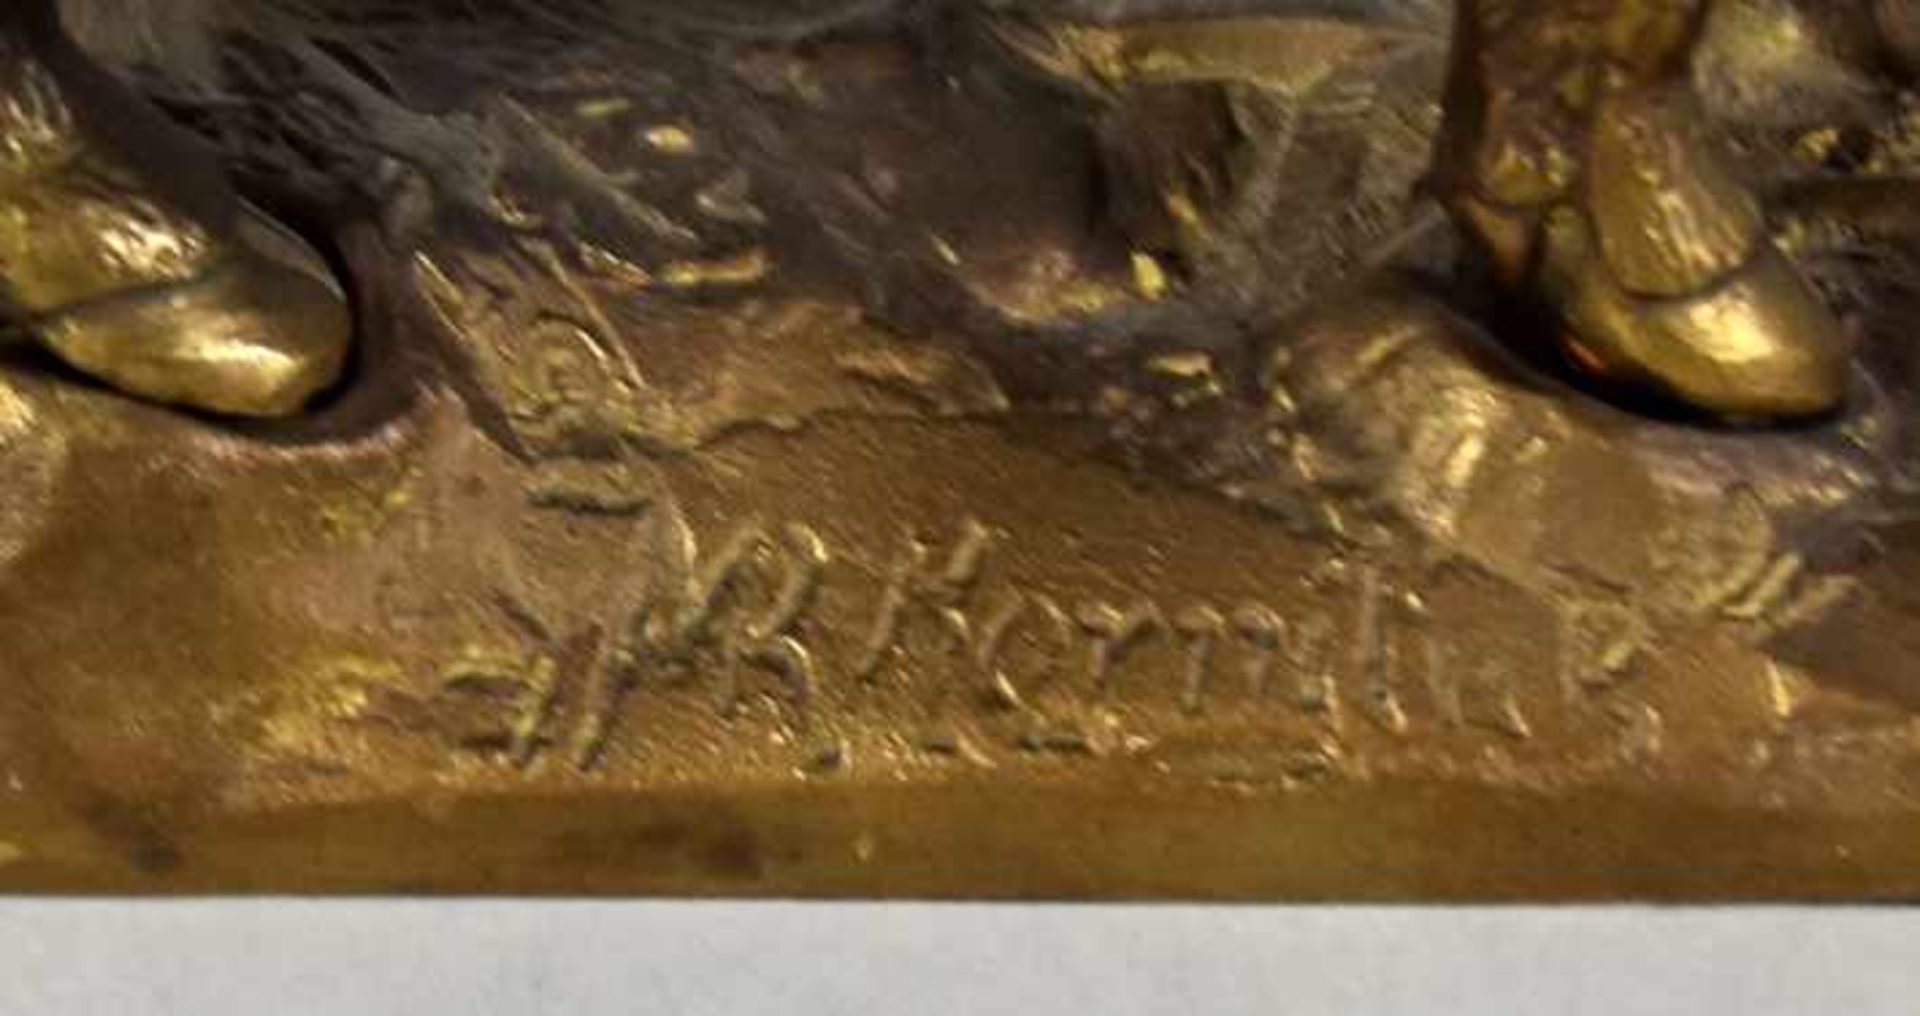 WILDSCHWEIN großer Eber auf naturalistisch gestalter Basis, signiert Mk Korniluk, Bronze, 18x21x9cm- - Image 3 of 3